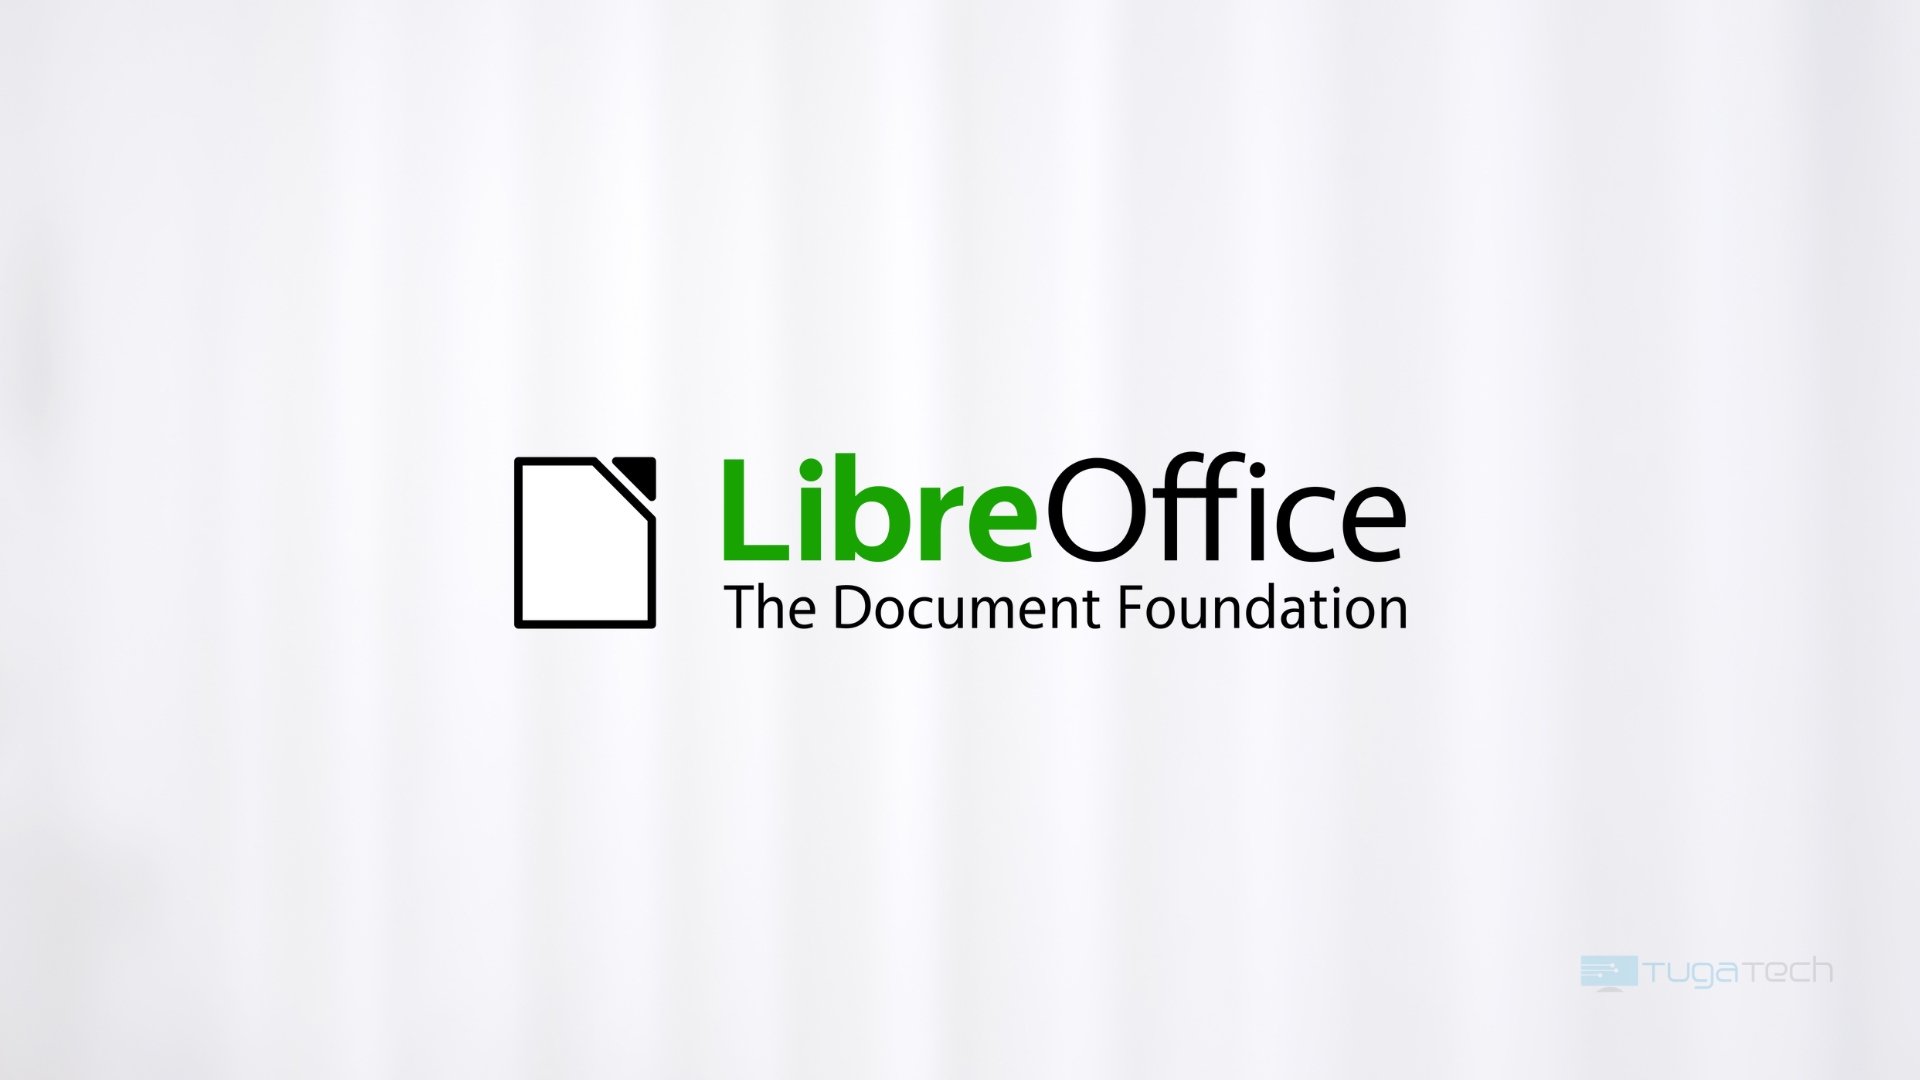 Imagem de logo do LibreOffice em fundo branco